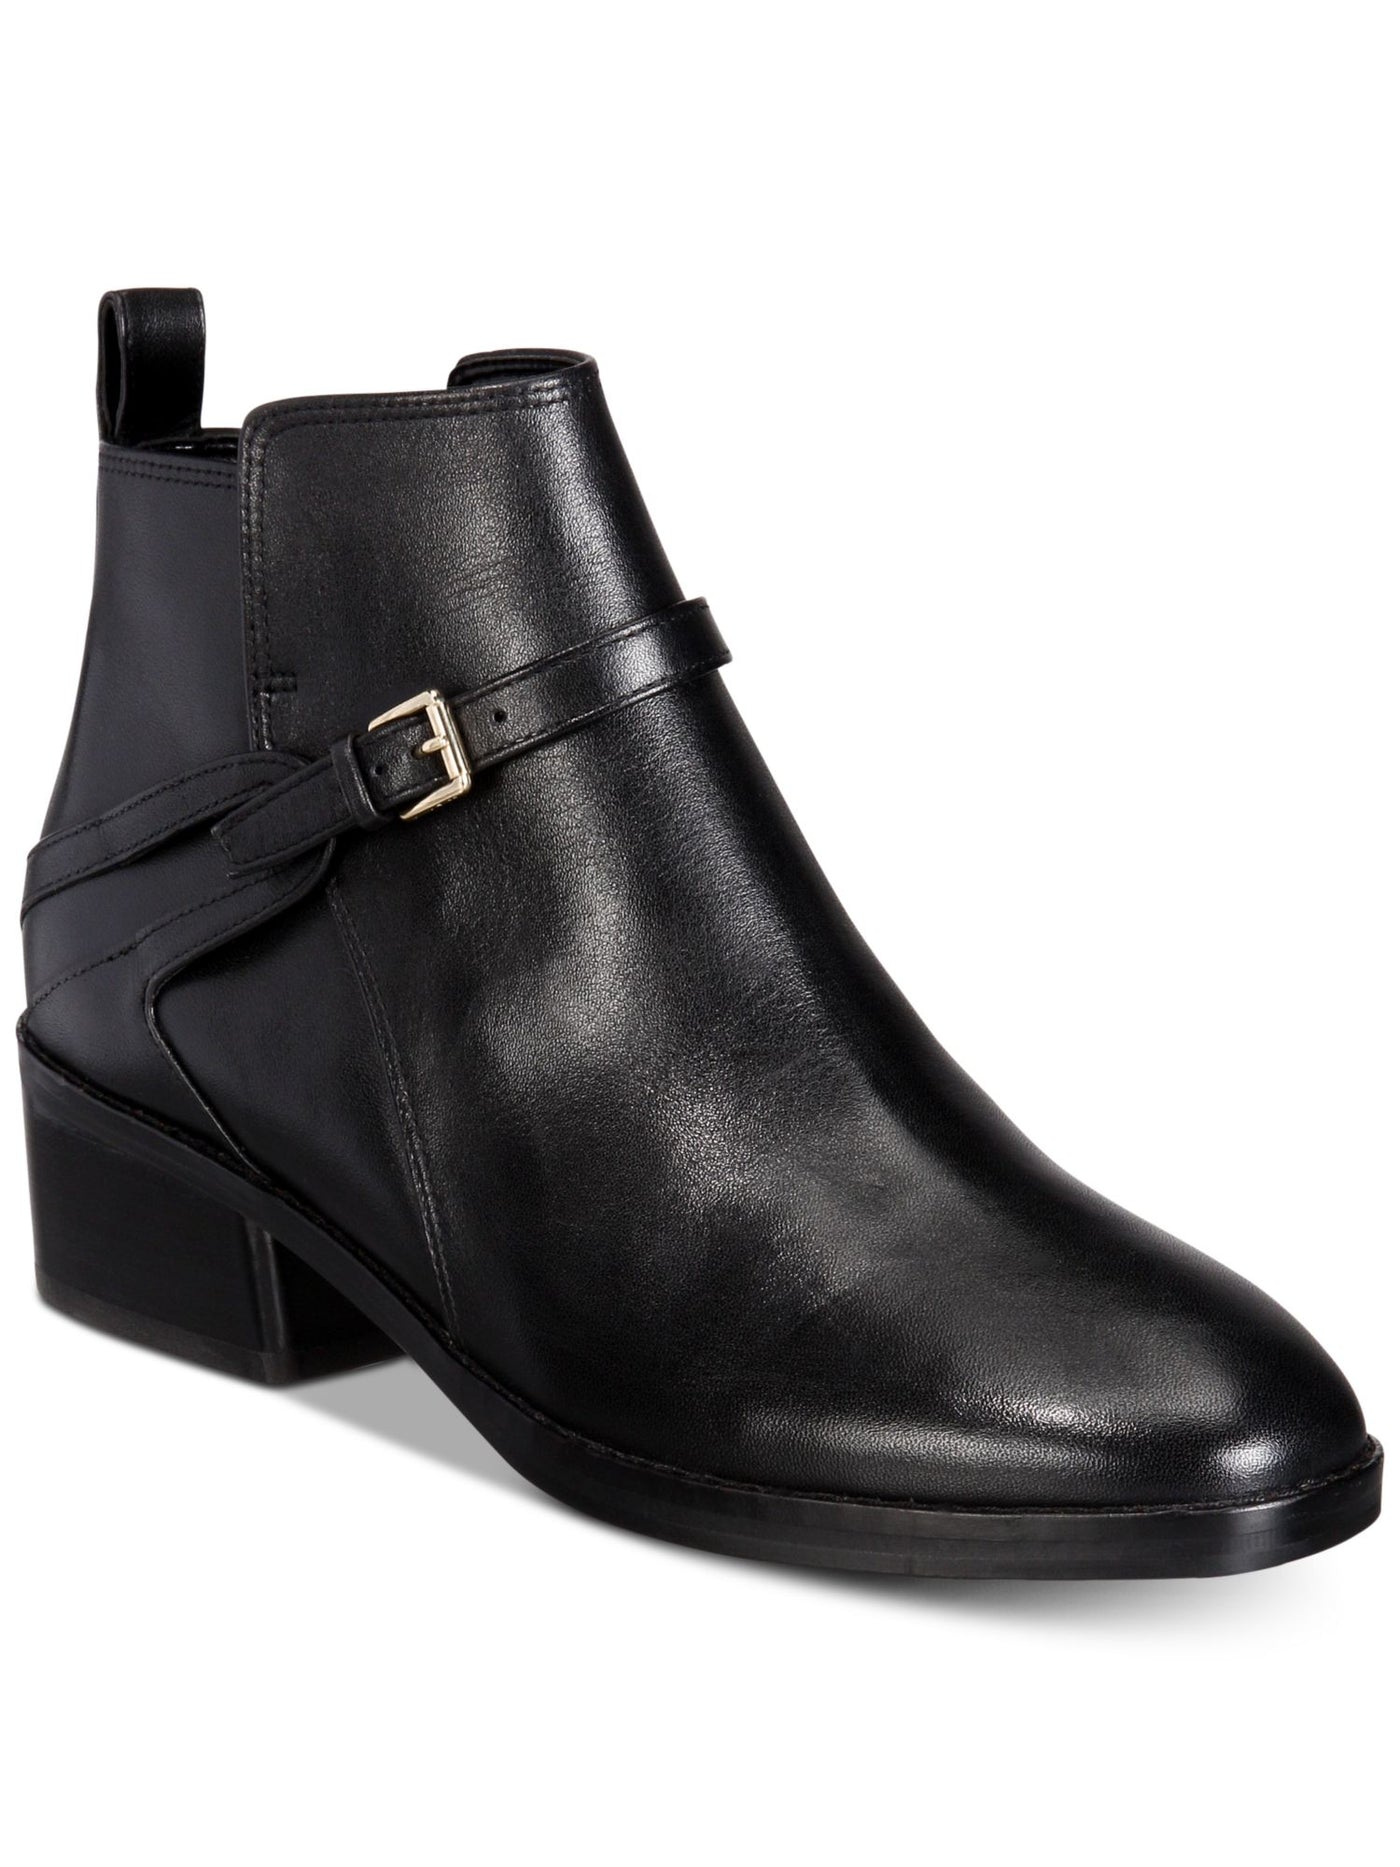 COLE HAAN Womens Black Adjustable Strap Etta Round Toe Block Heel Zip-Up Leather Booties 6.5 B